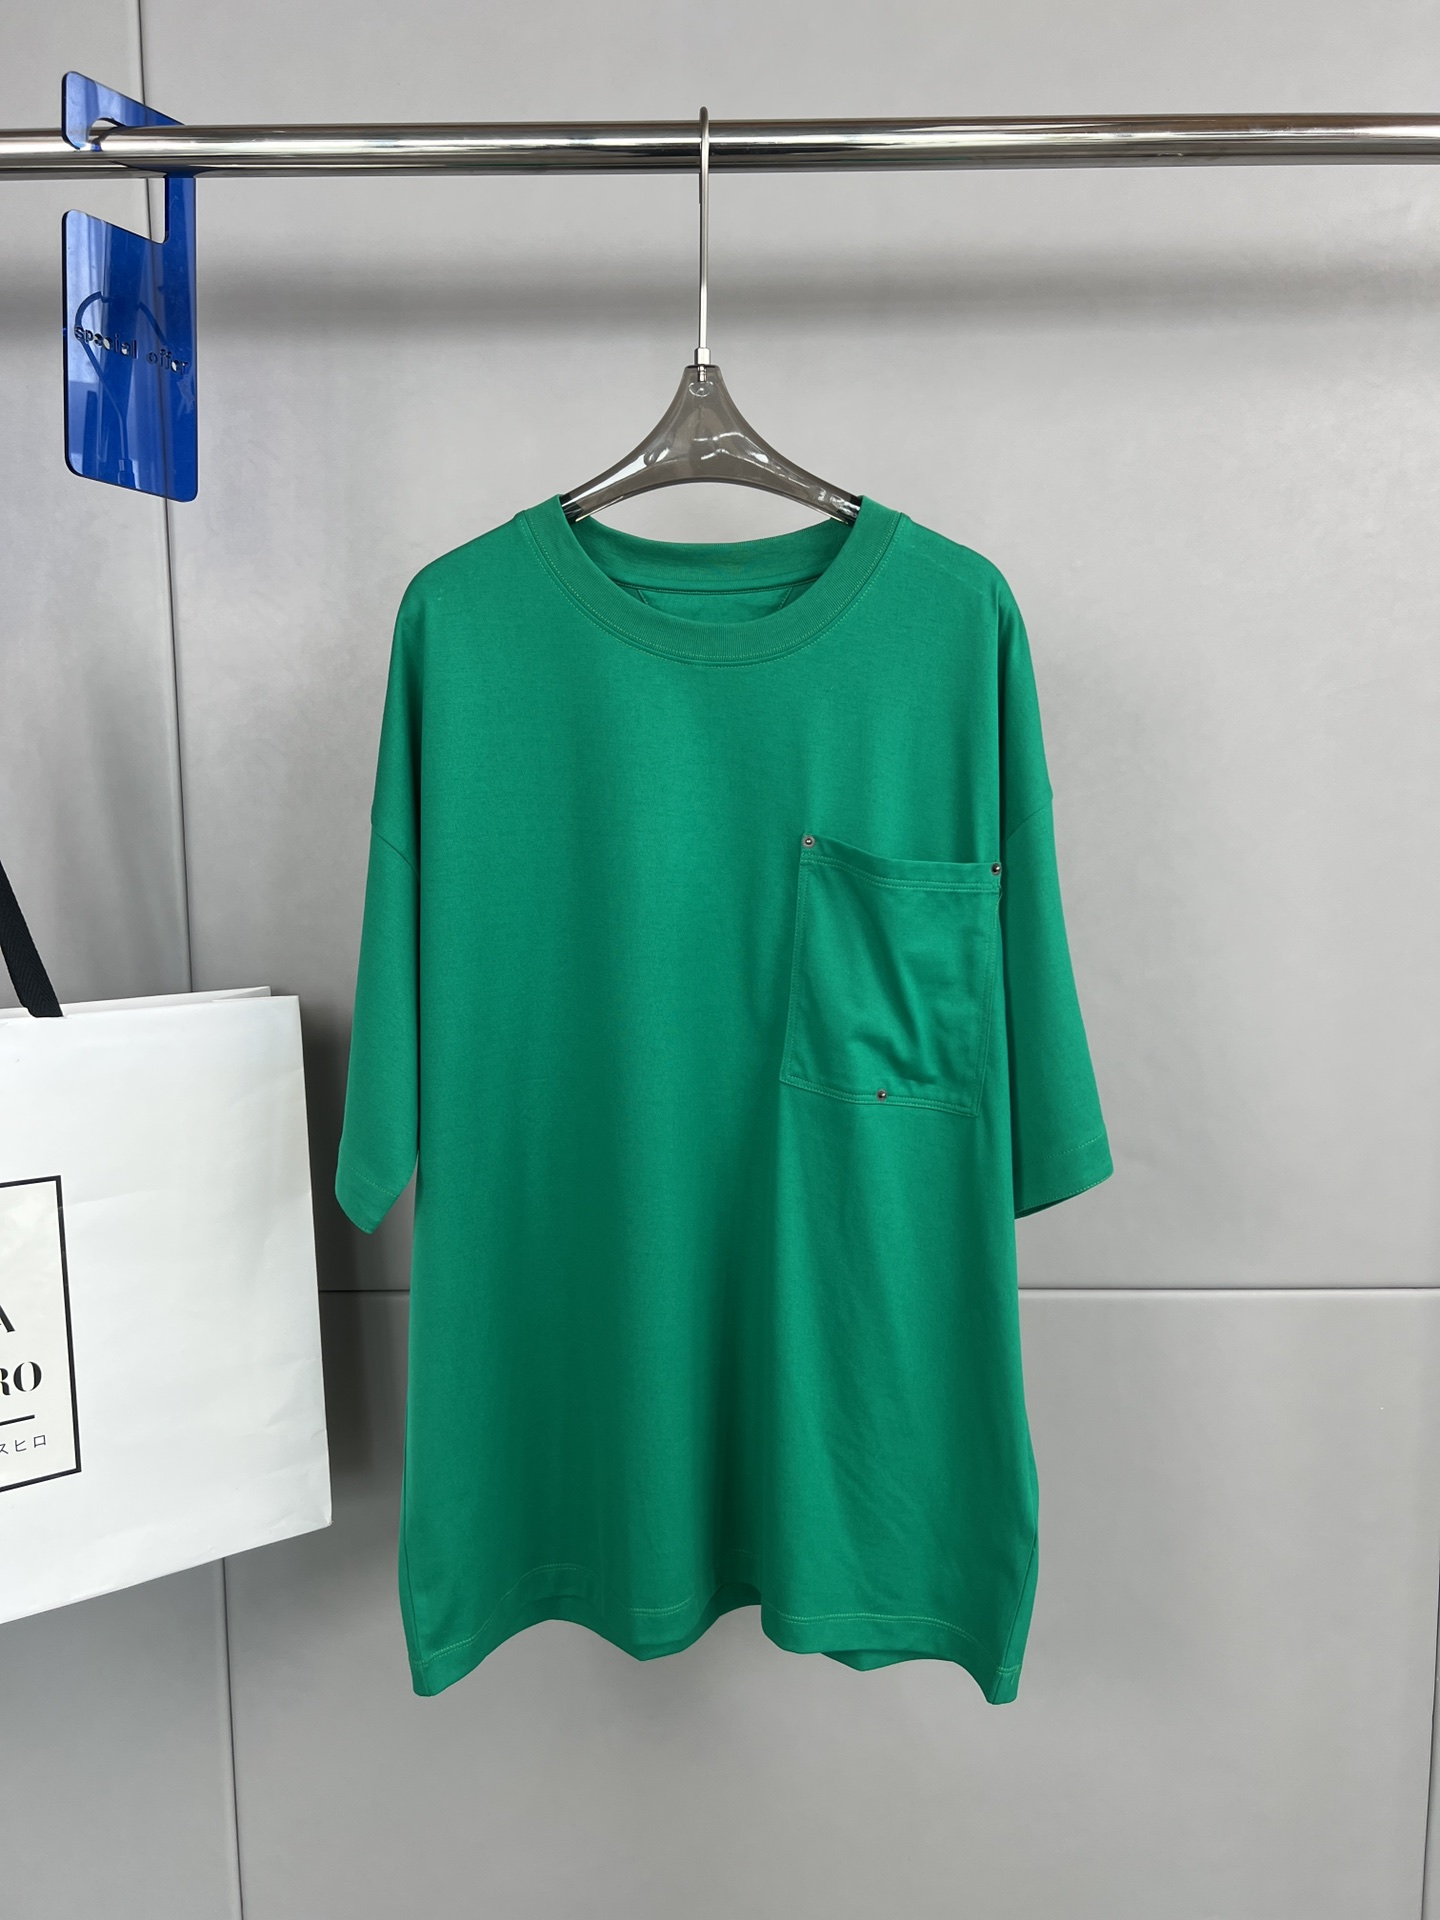 Bottega Veneta BV 夏季新款 纯色宽松休闲短袖T恤 口袋三颗扣子V型细节、背面领口品牌标志性三角形刺绣、宽松版型、男女同款\n码数S- XL